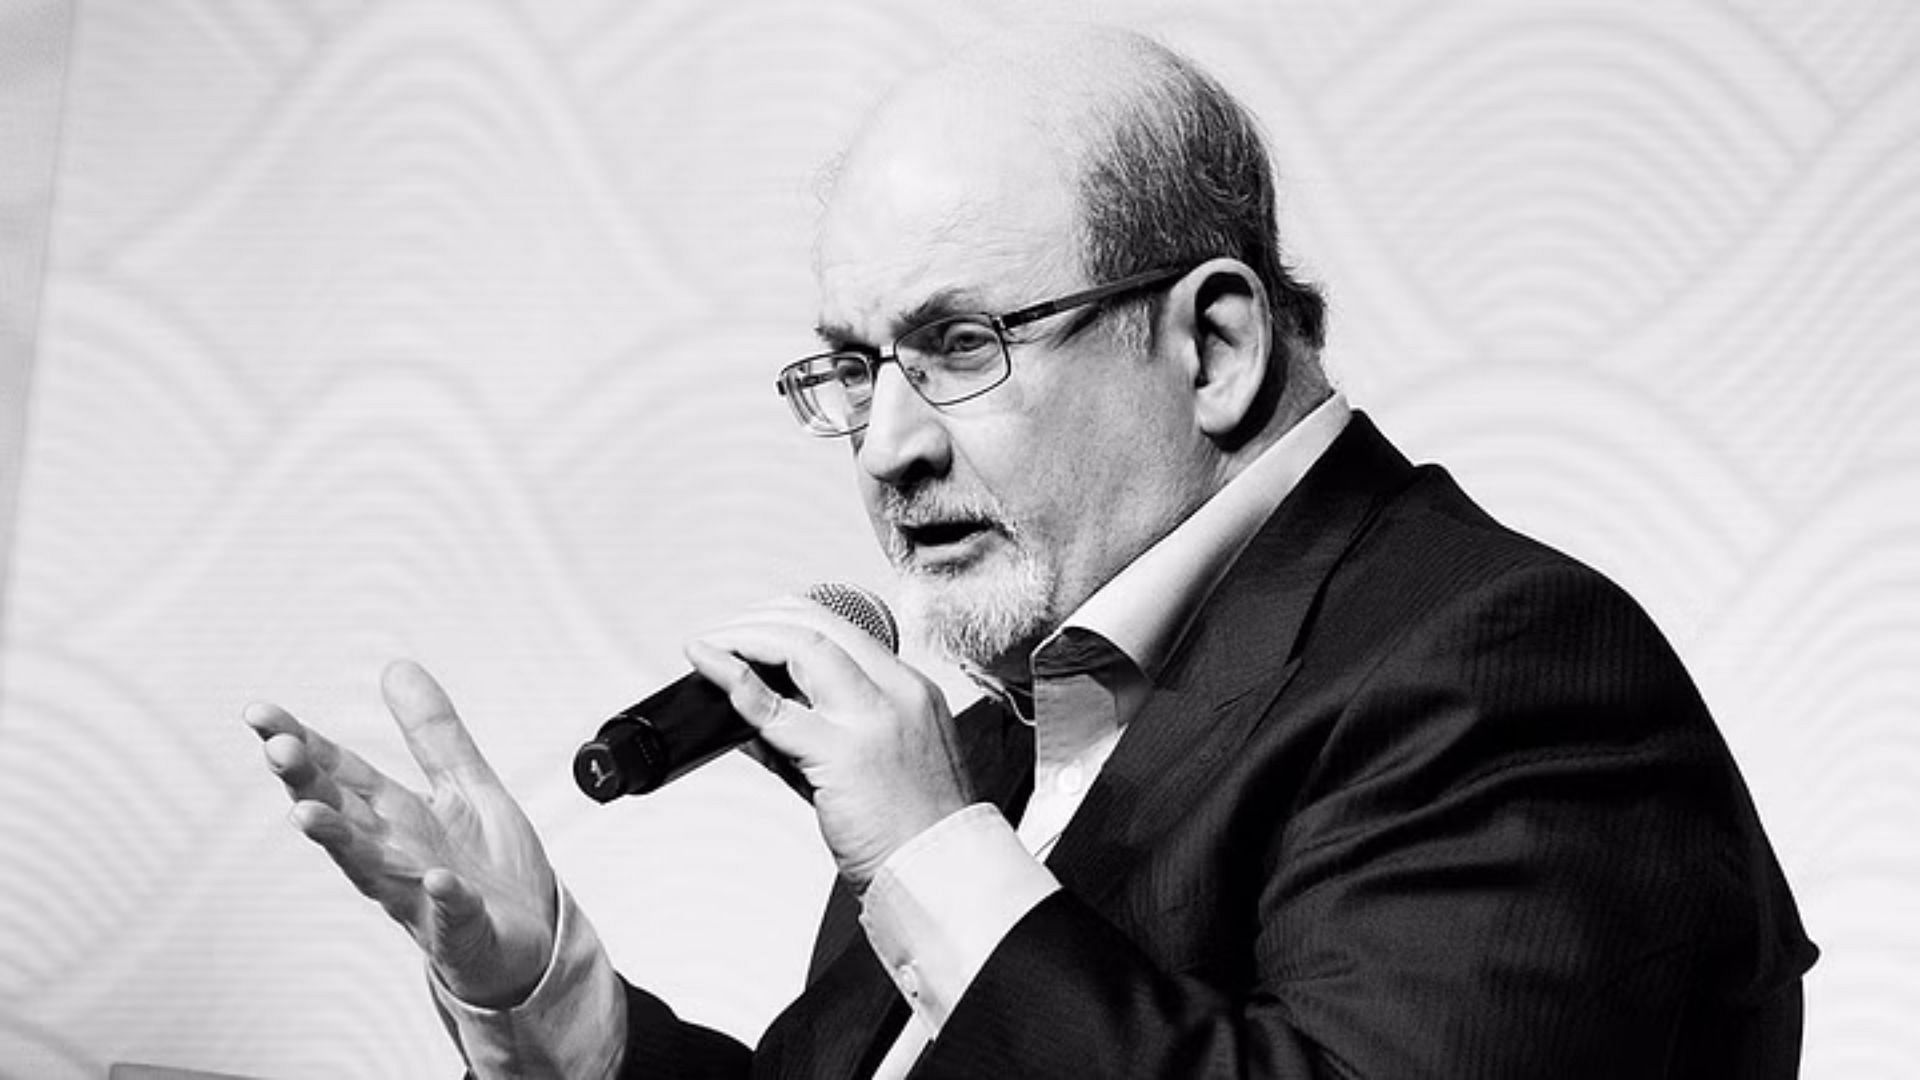 <div class="paragraphs"><p>Salman Rushdie Attacked: लेखक सलमान रुश्दी पर अमेरिका में चाकू से हमला</p></div>